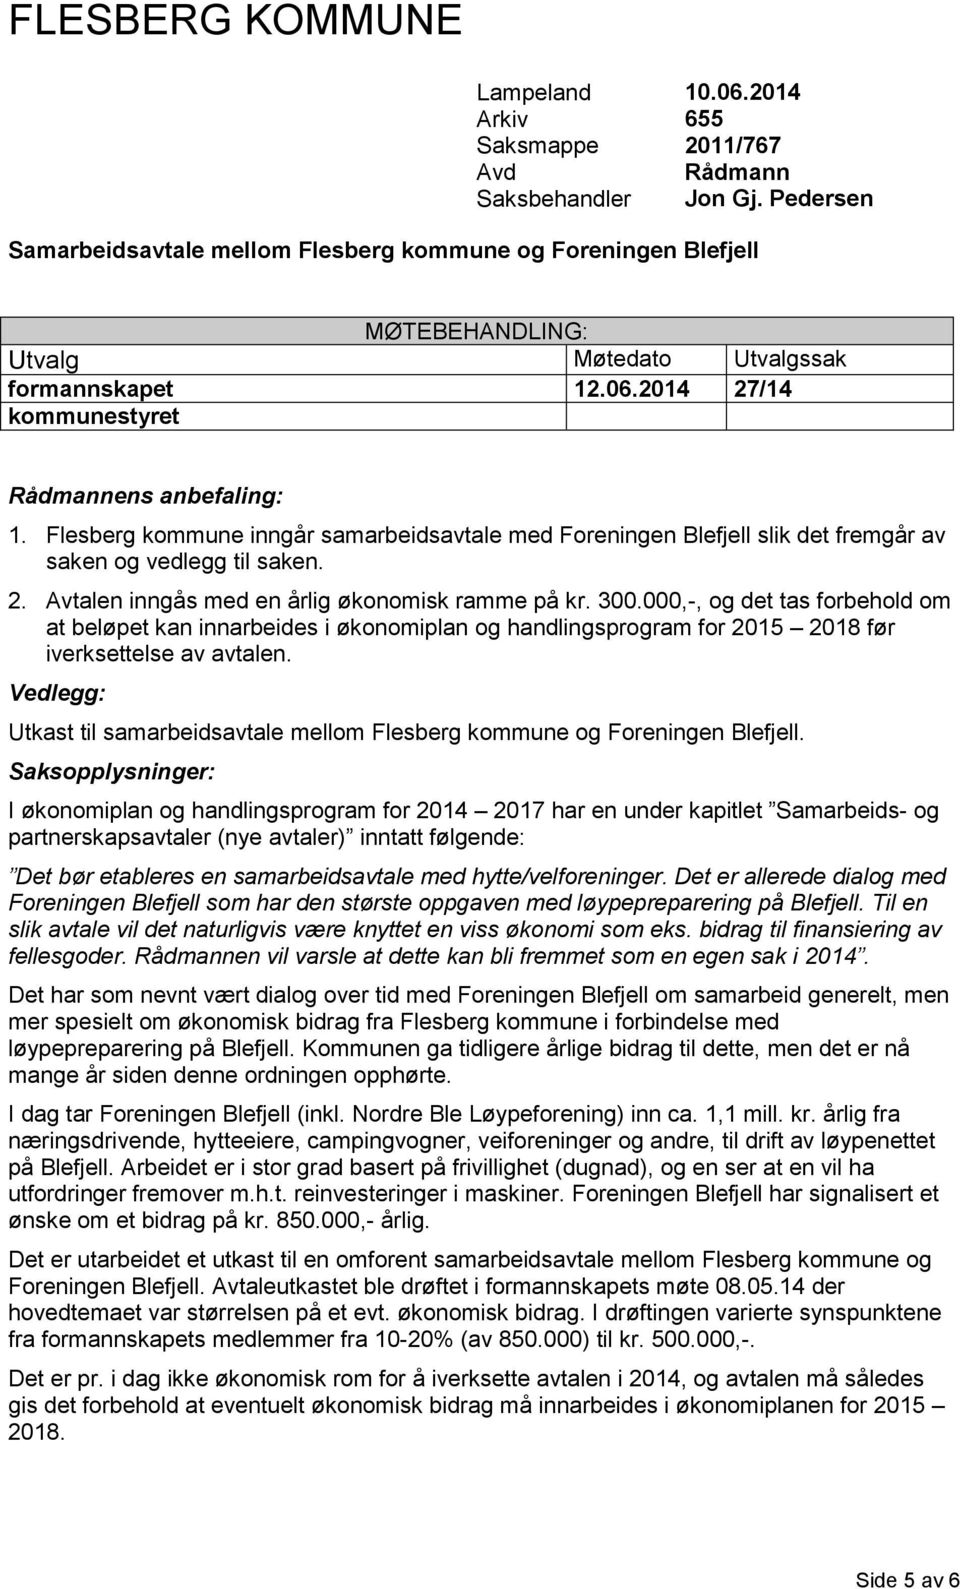 Flesberg kommune inngår samarbeidsavtale med Foreningen Blefjell slik det fremgår av saken og vedlegg til saken. 2. Avtalen inngås med en årlig økonomisk ramme på kr. 300.